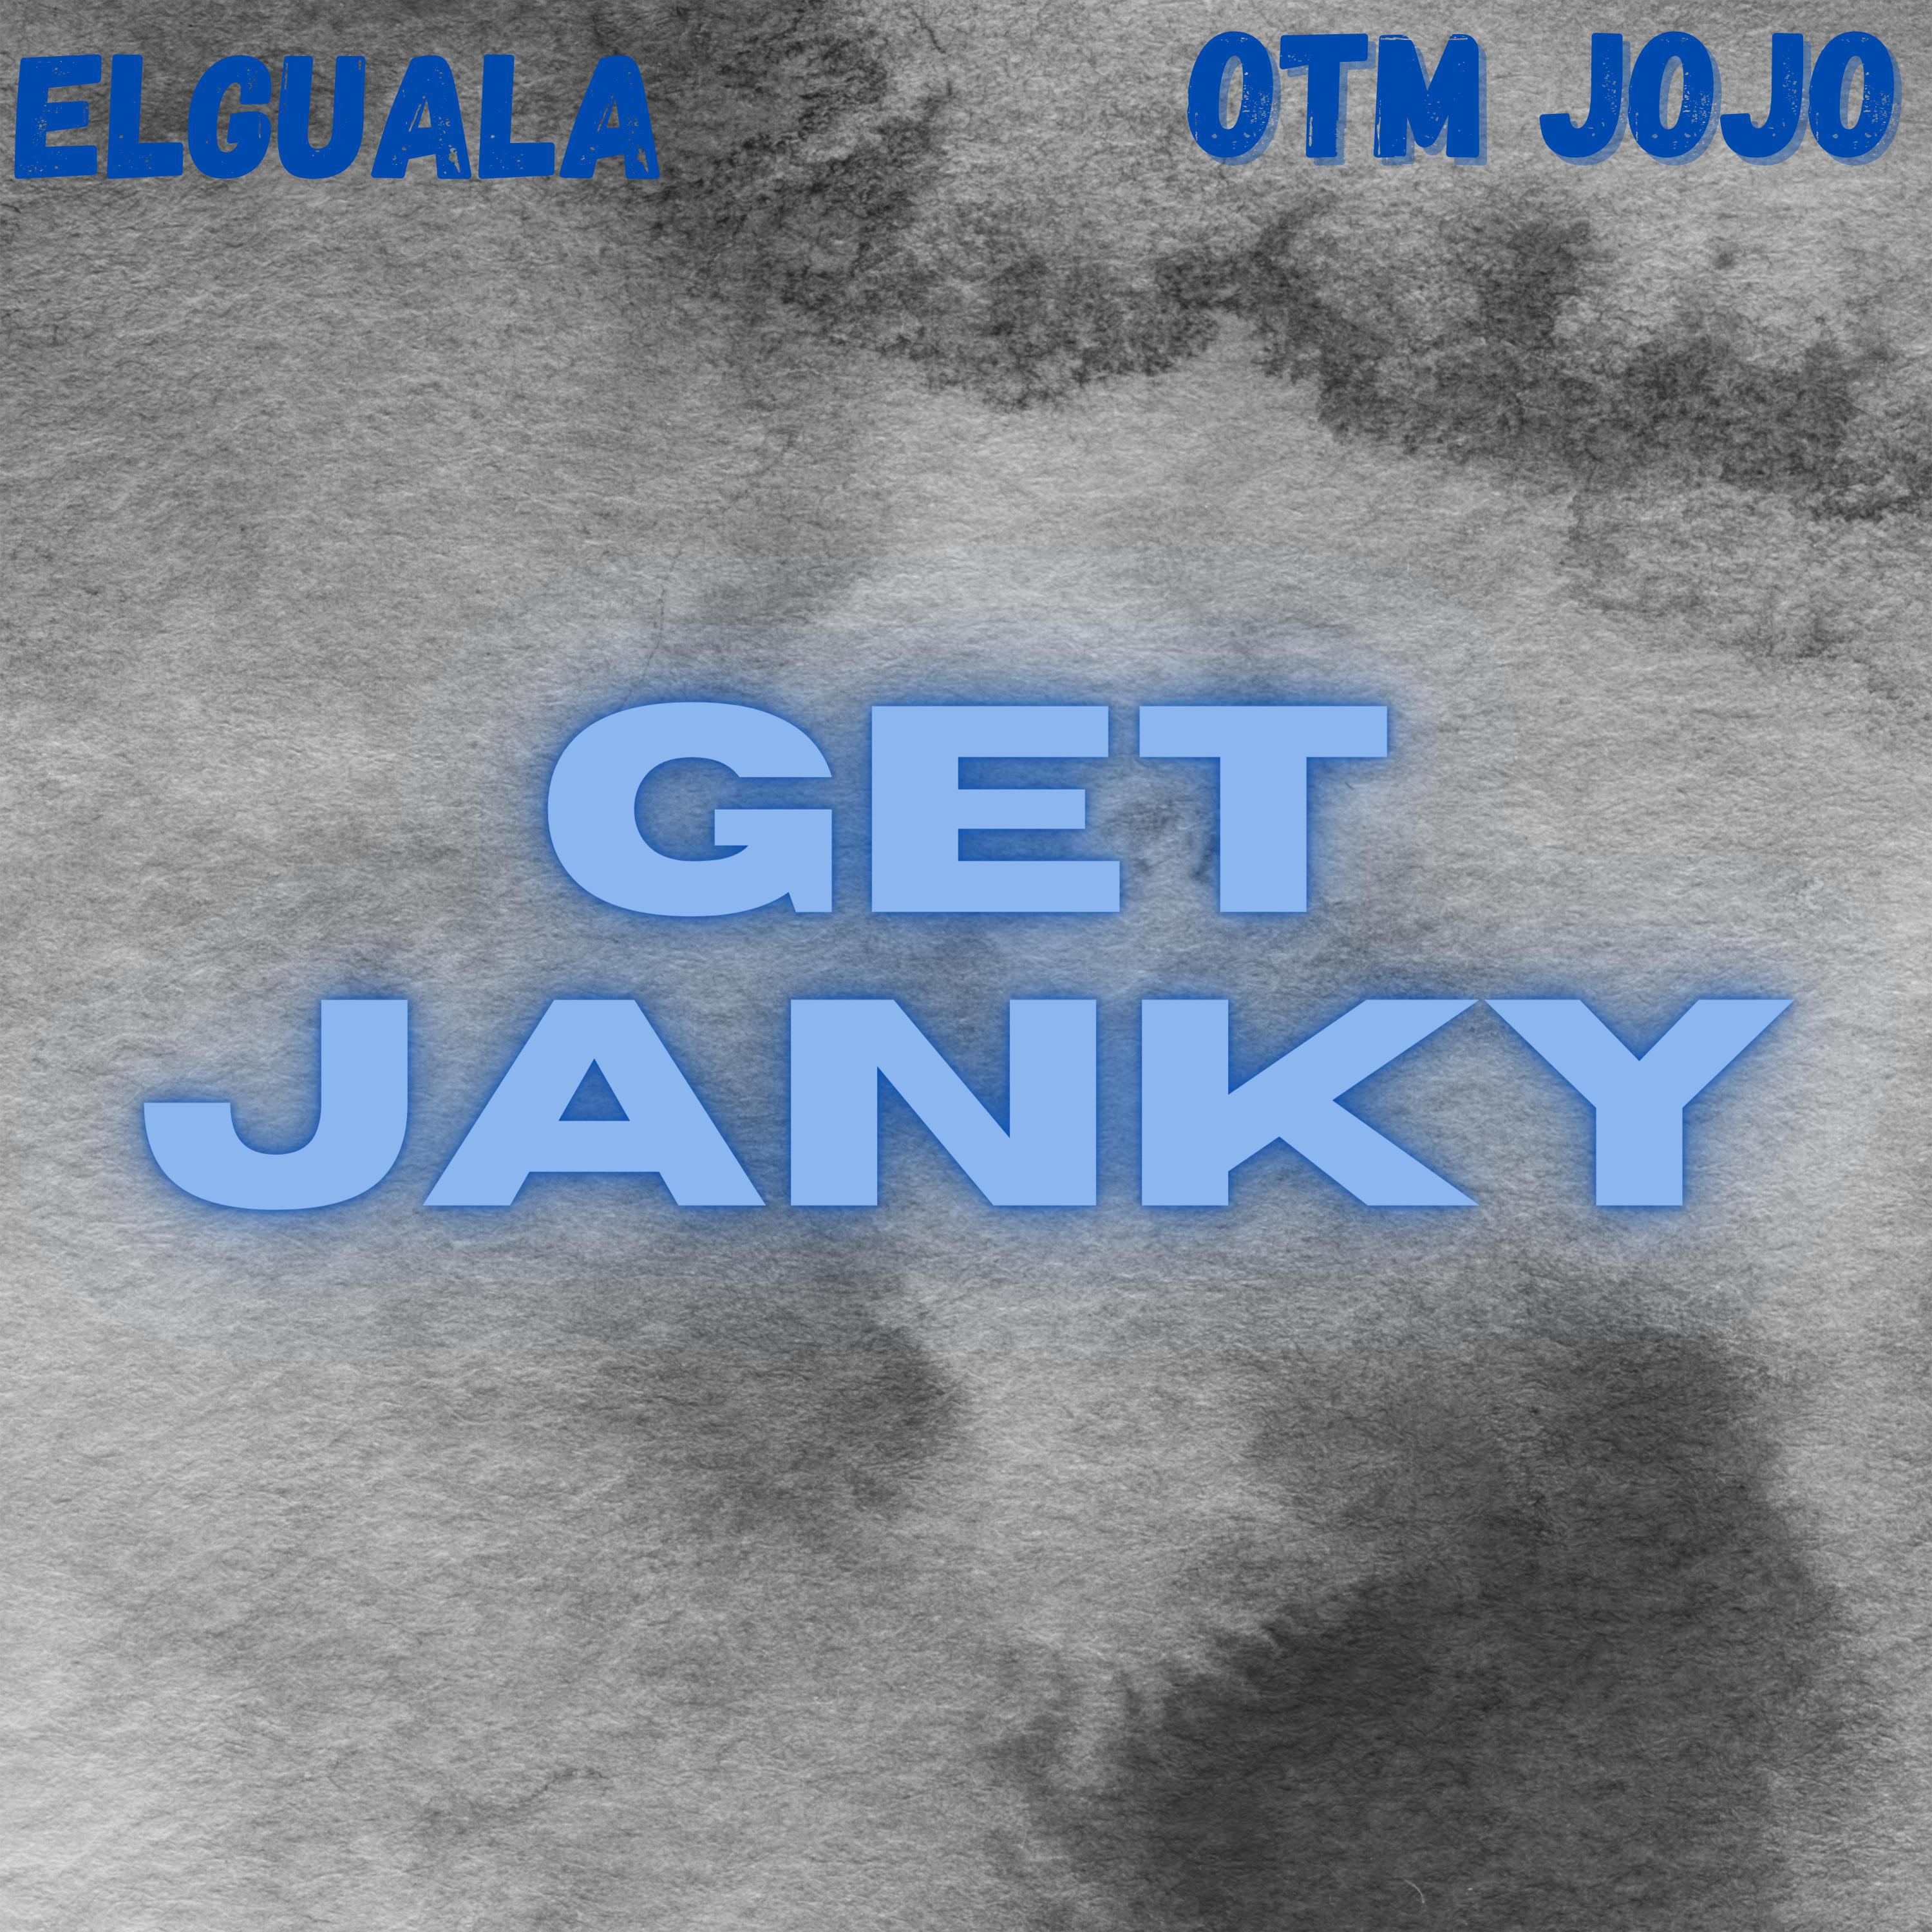 Elguala - Get Janky (feat. OTM JoJo)